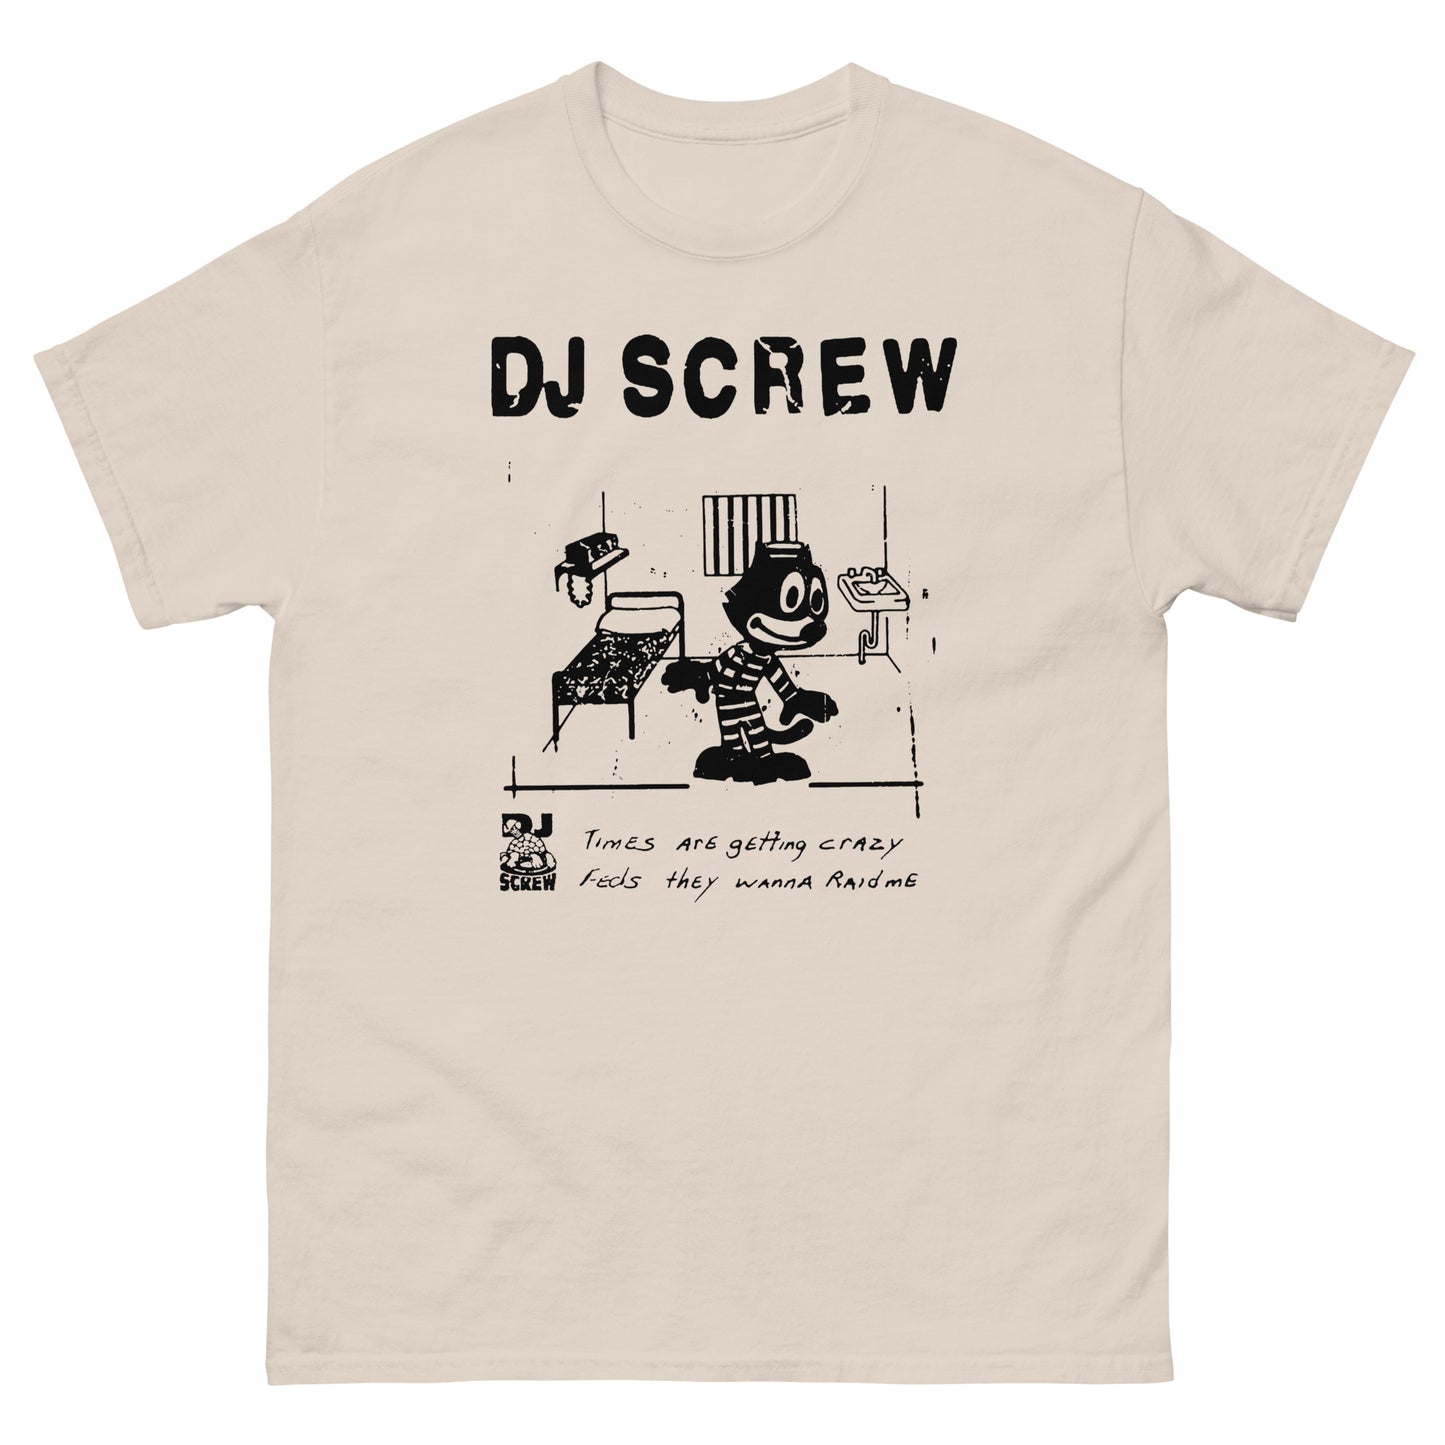 DJ SCREW T-Shirt